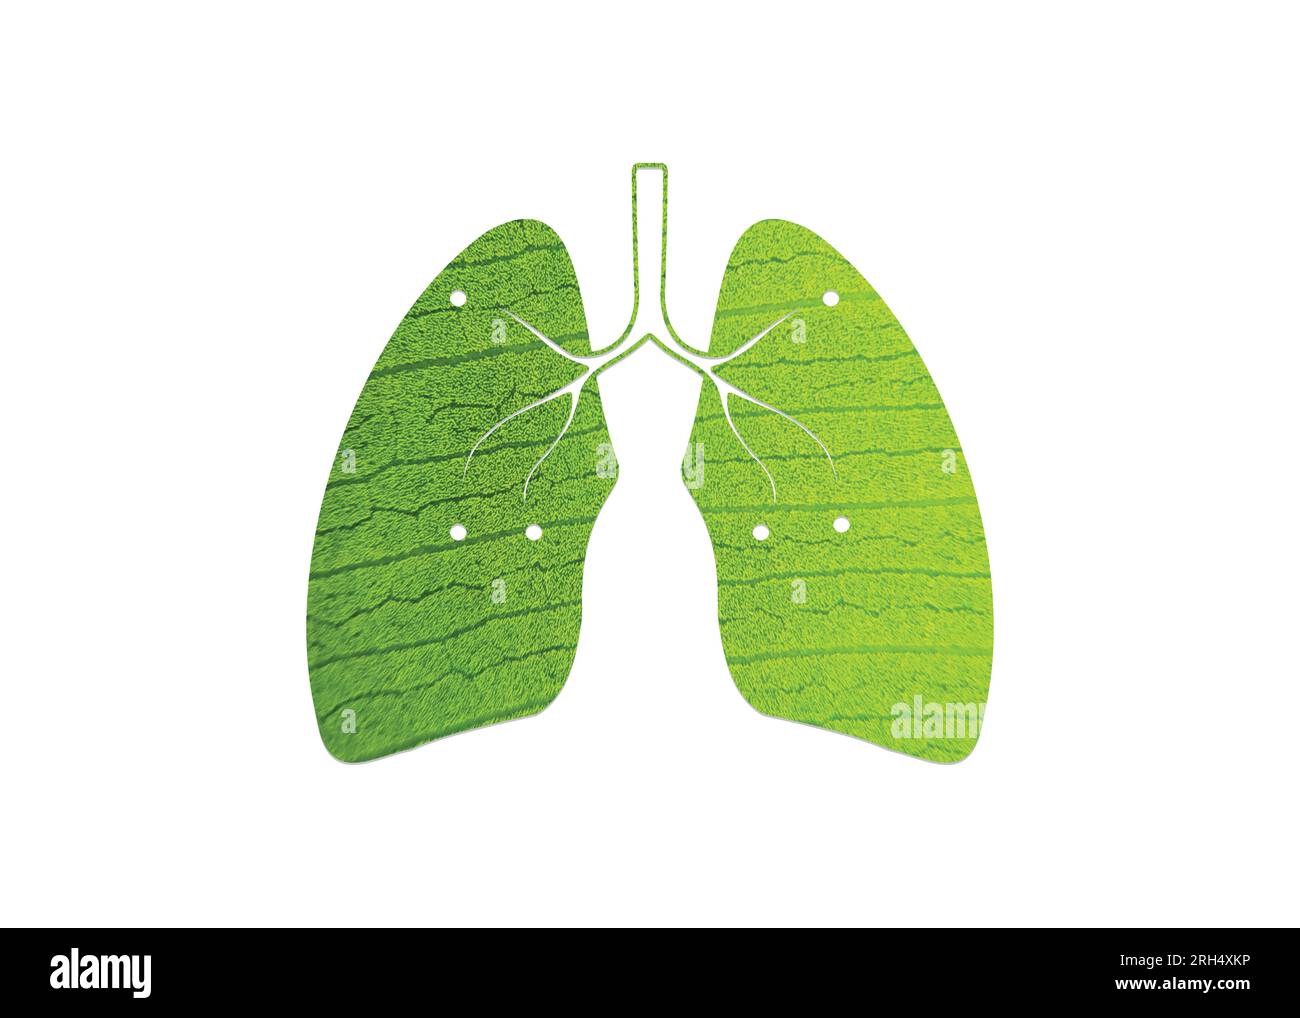 Grünes Blatt, geformt wie menschliche Lungen, konzeptionelle Vektordarstellung. Lungenform auf weißem Hintergrund isoliert- Grün und ökologisches Konzept. Stock Vektor